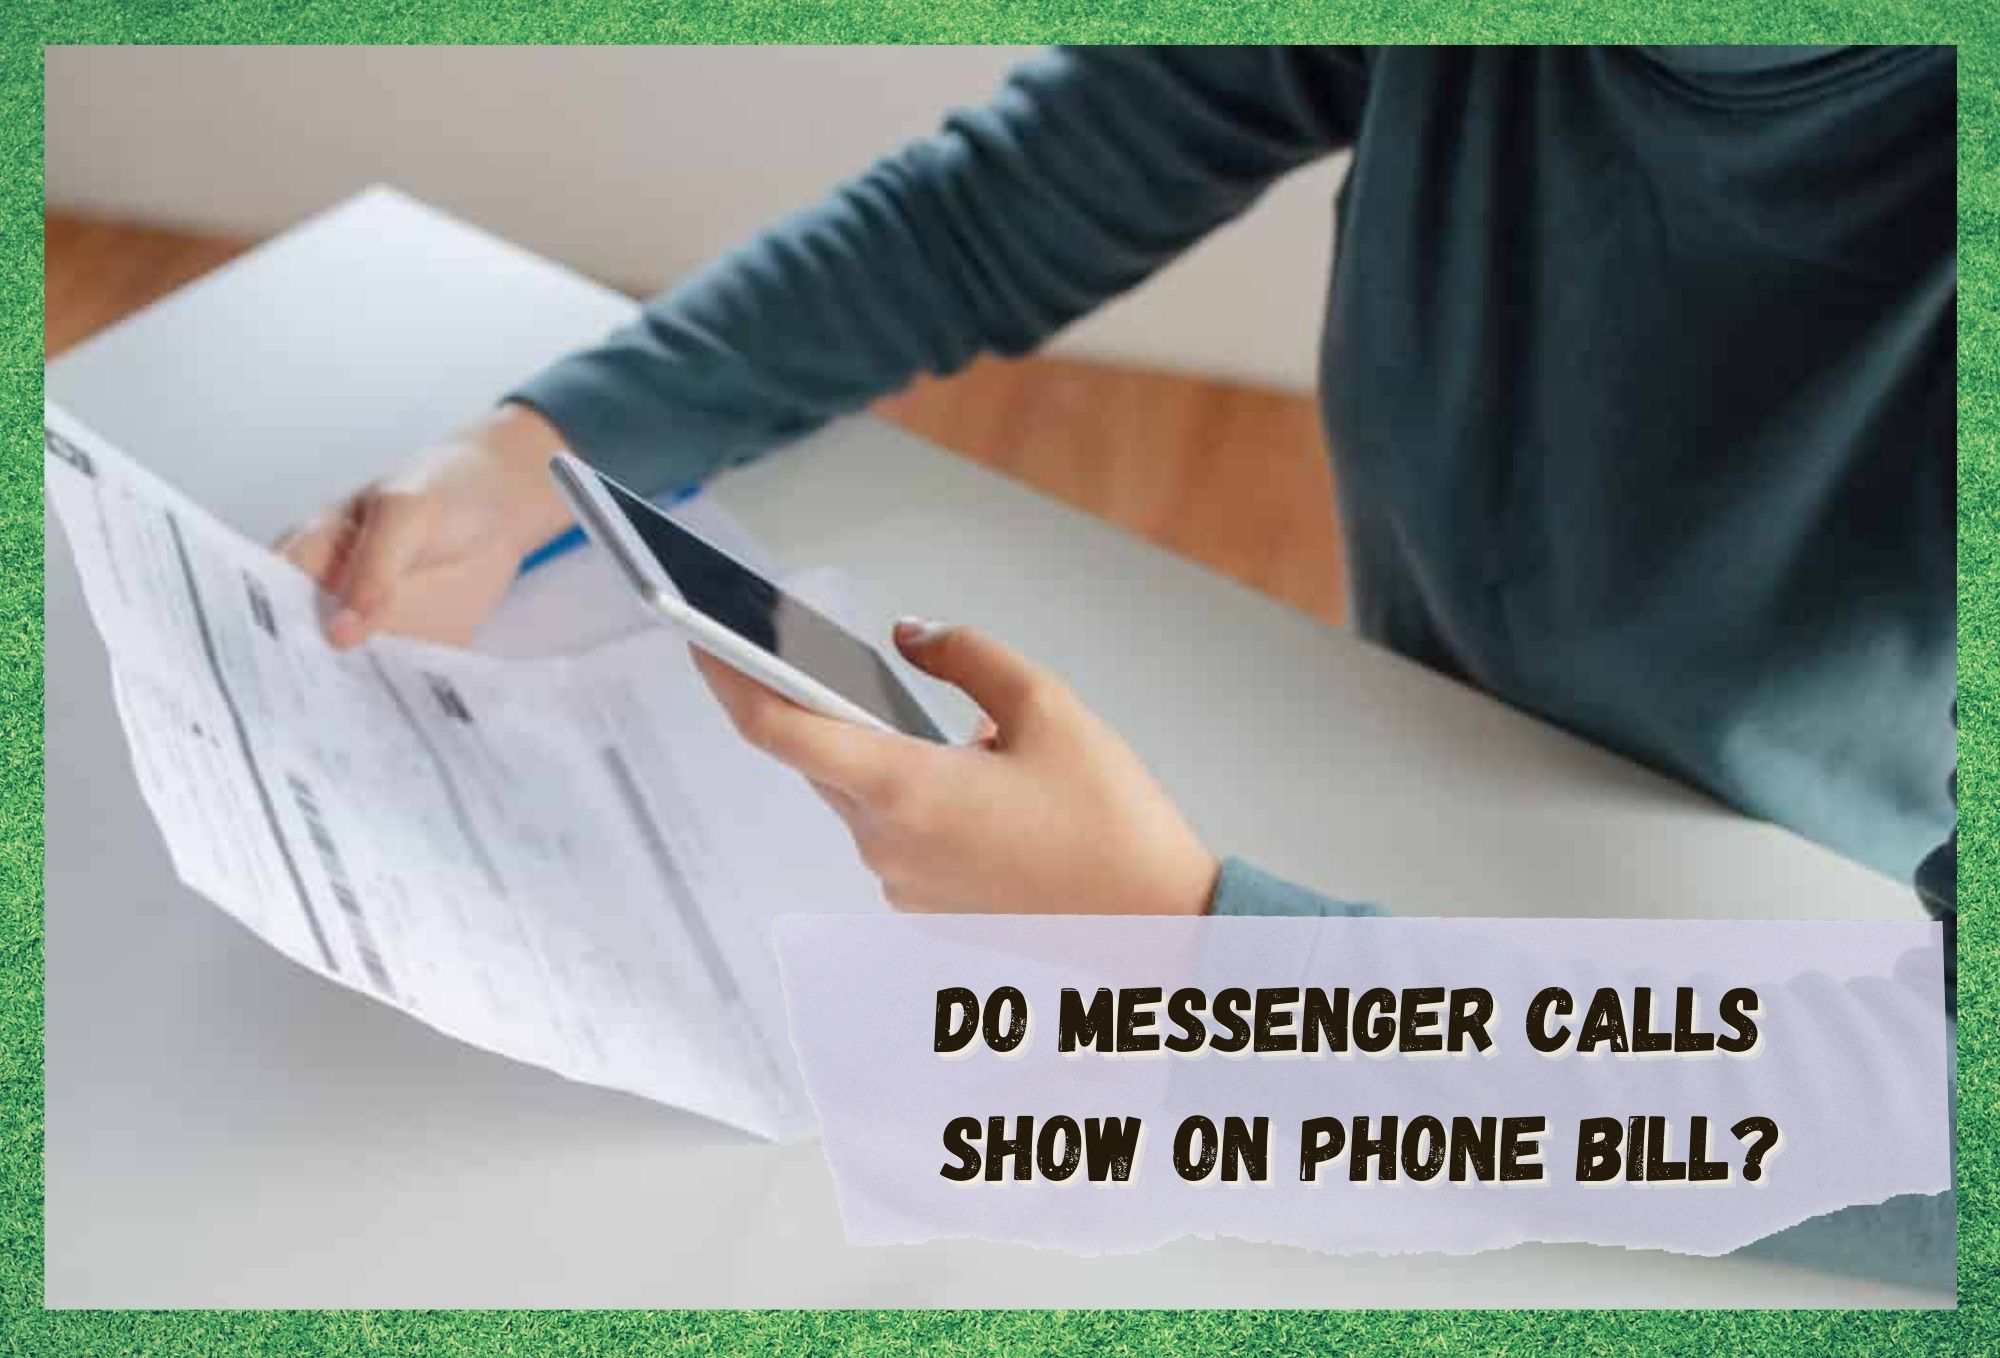 Werden Messenger-Anrufe auf der Telefonrechnung ausgewiesen?